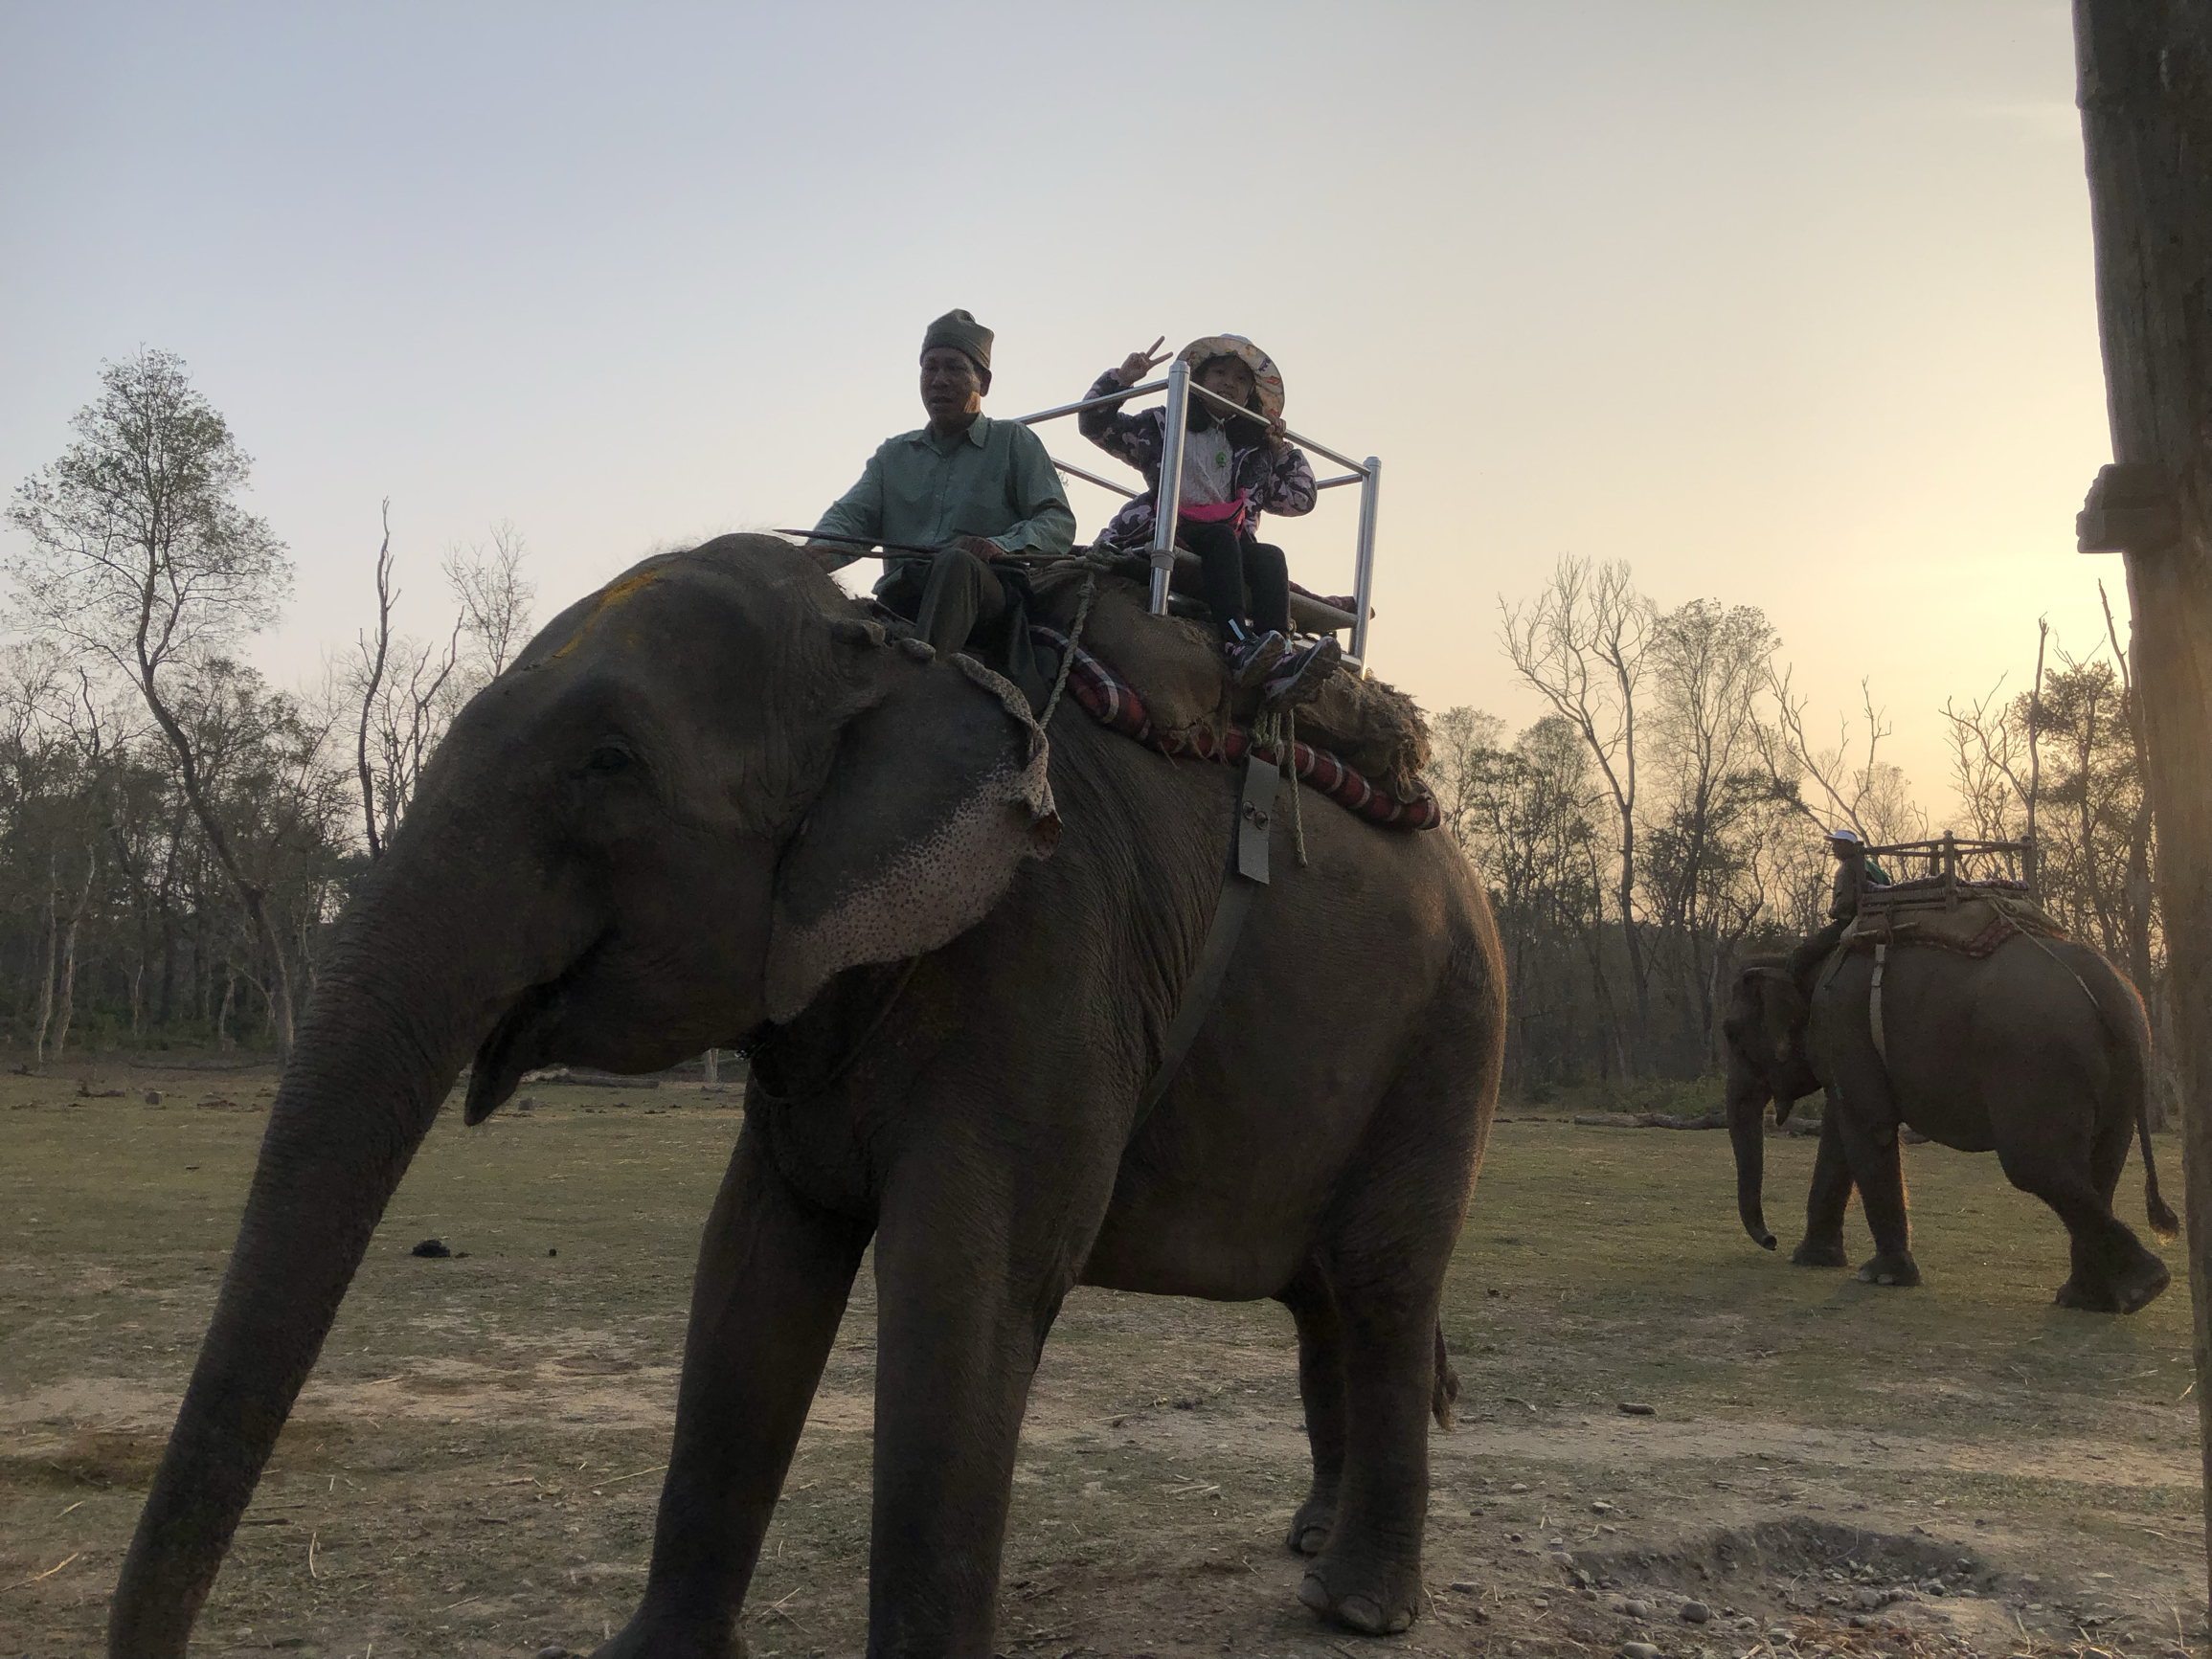 尼泊尔齐德旺国家公园，大象慢慢走着，大家开心的不得了。